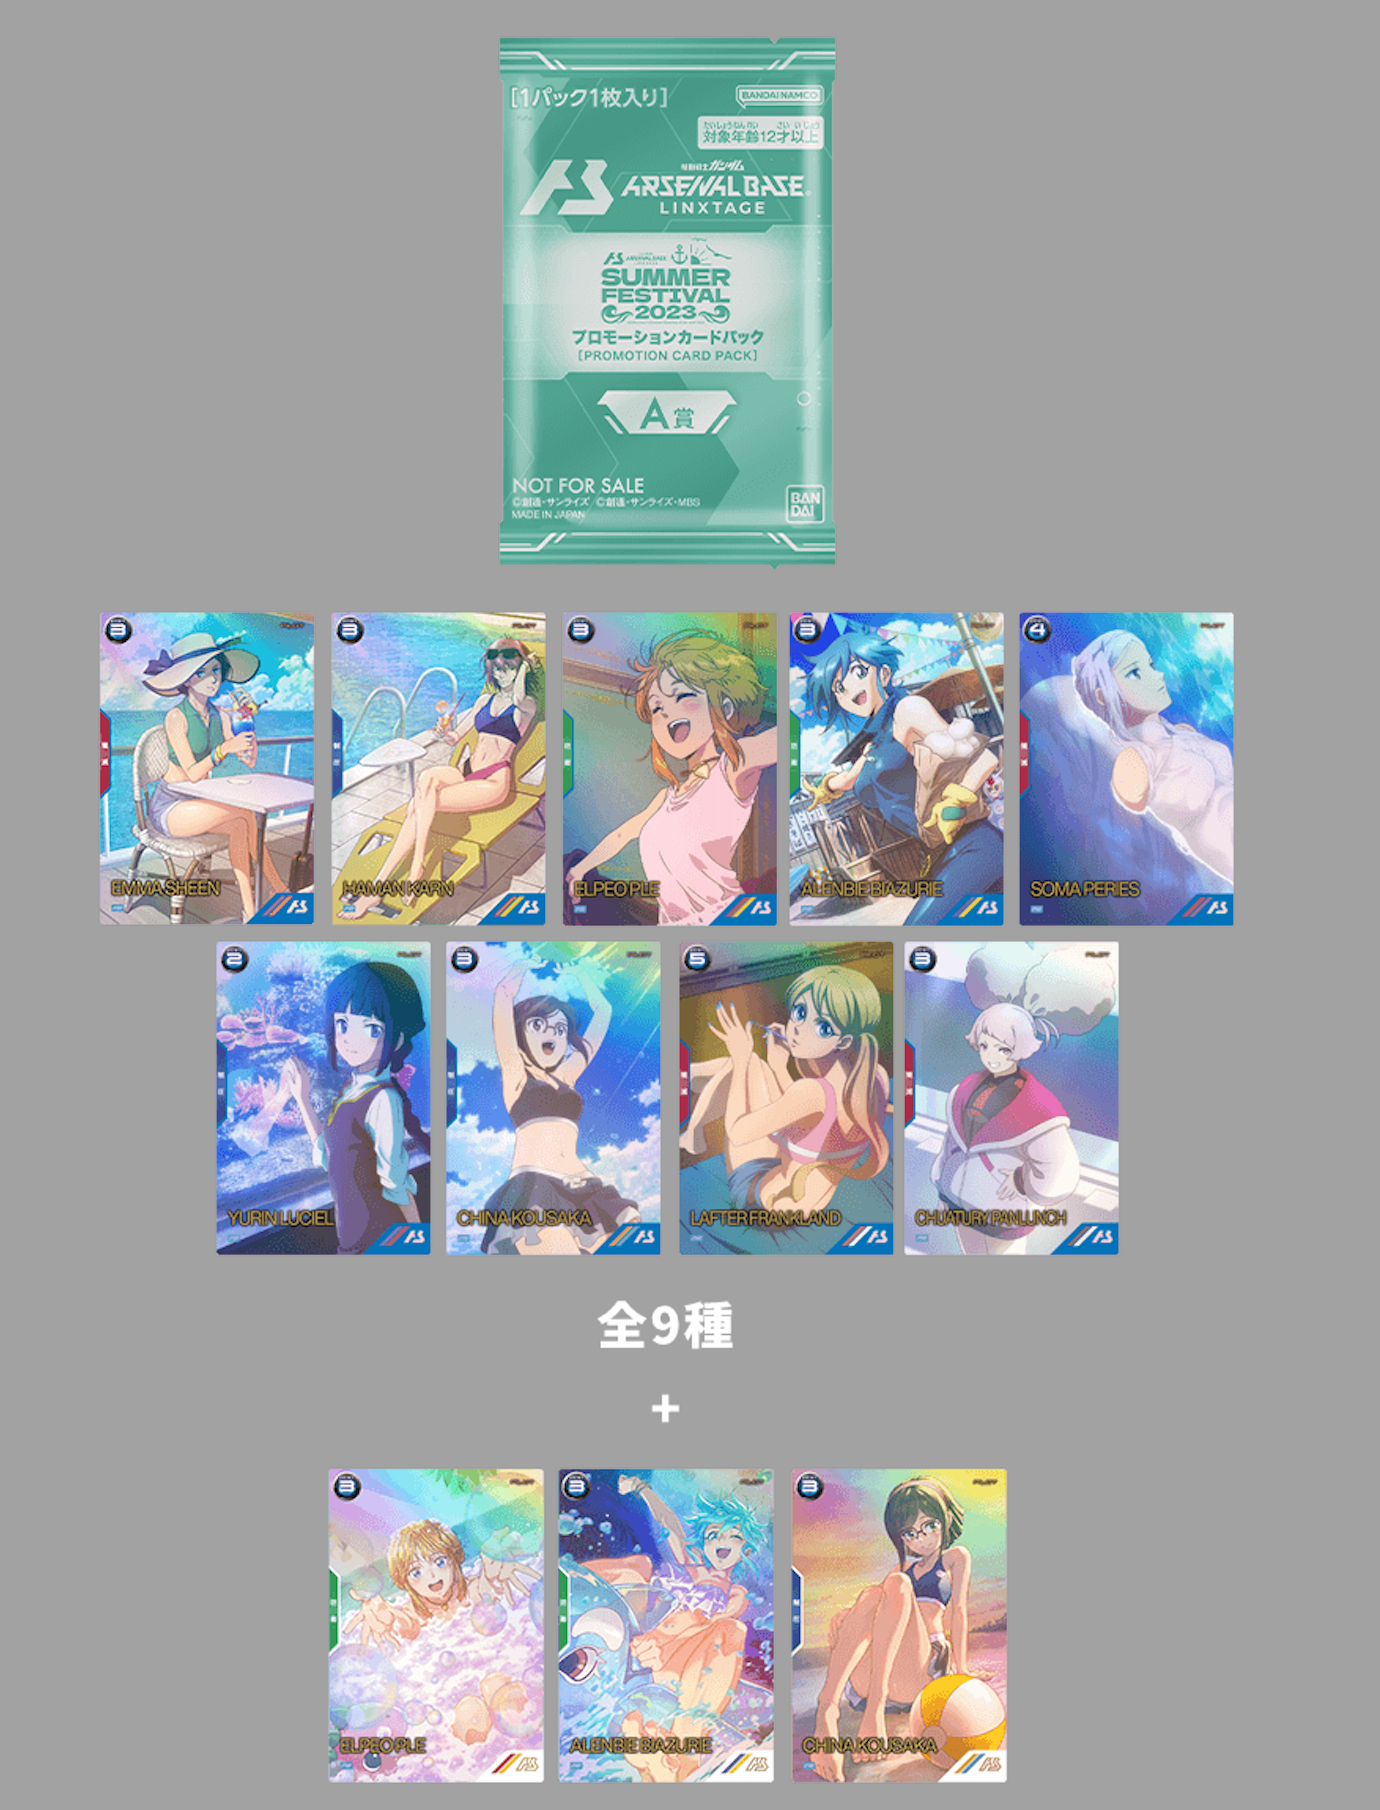 GUNDAM ARSENAL BASE Summer FESTIVAL 2023 A賞 [GIRLS PROMOTION CARD PACK]